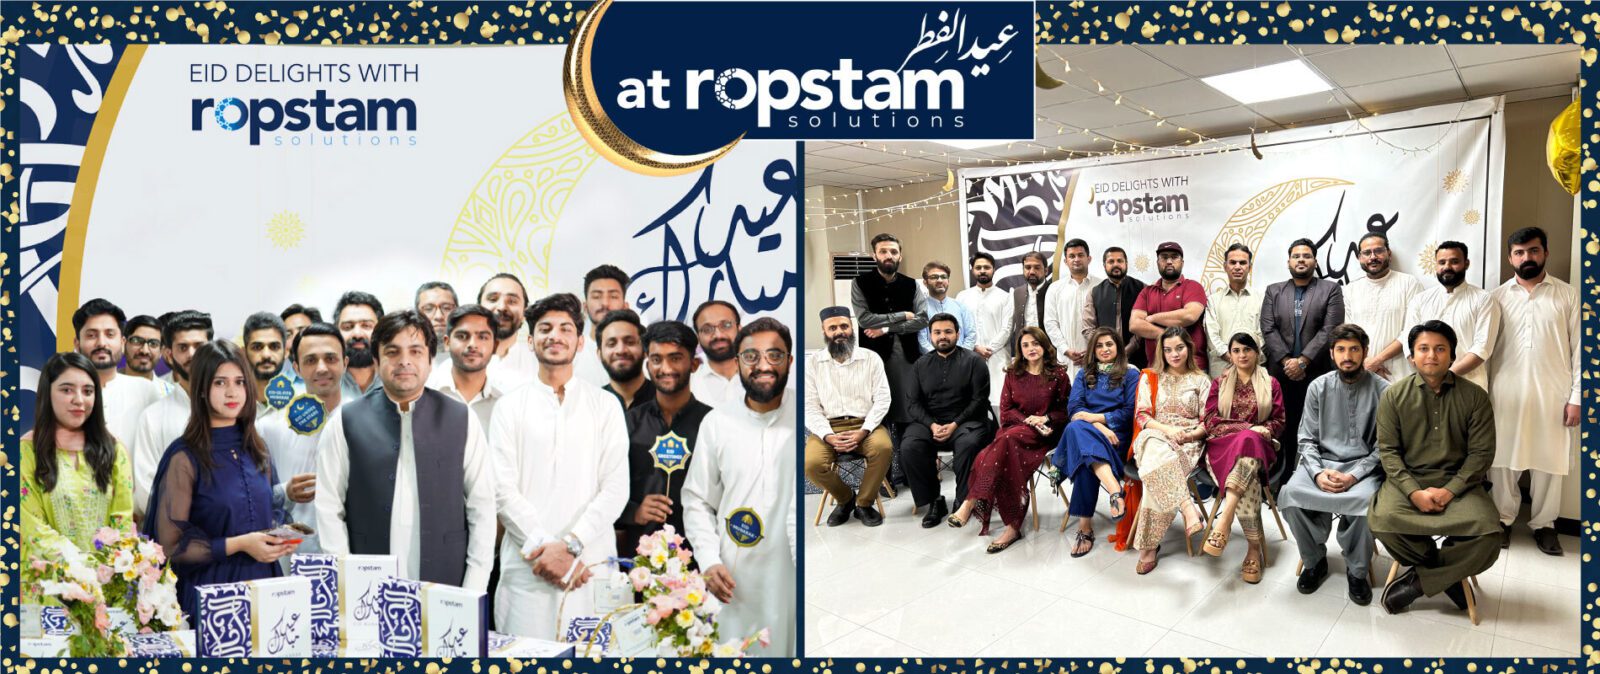 Eid festivities at Ropstam